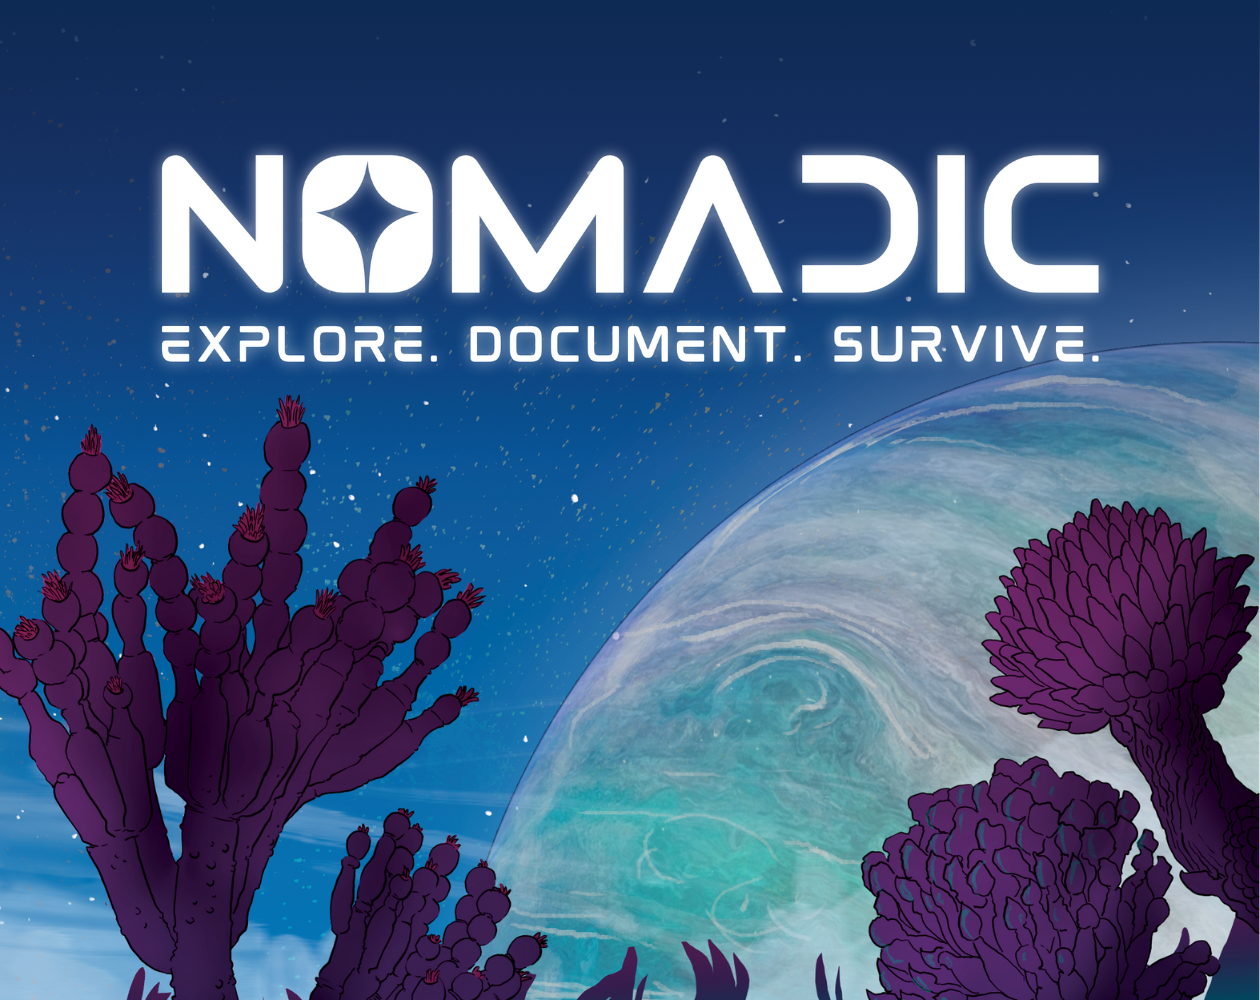 Nomadic - Explore, Document, Survive by Fari RPGs (René-Pier Deshaies)